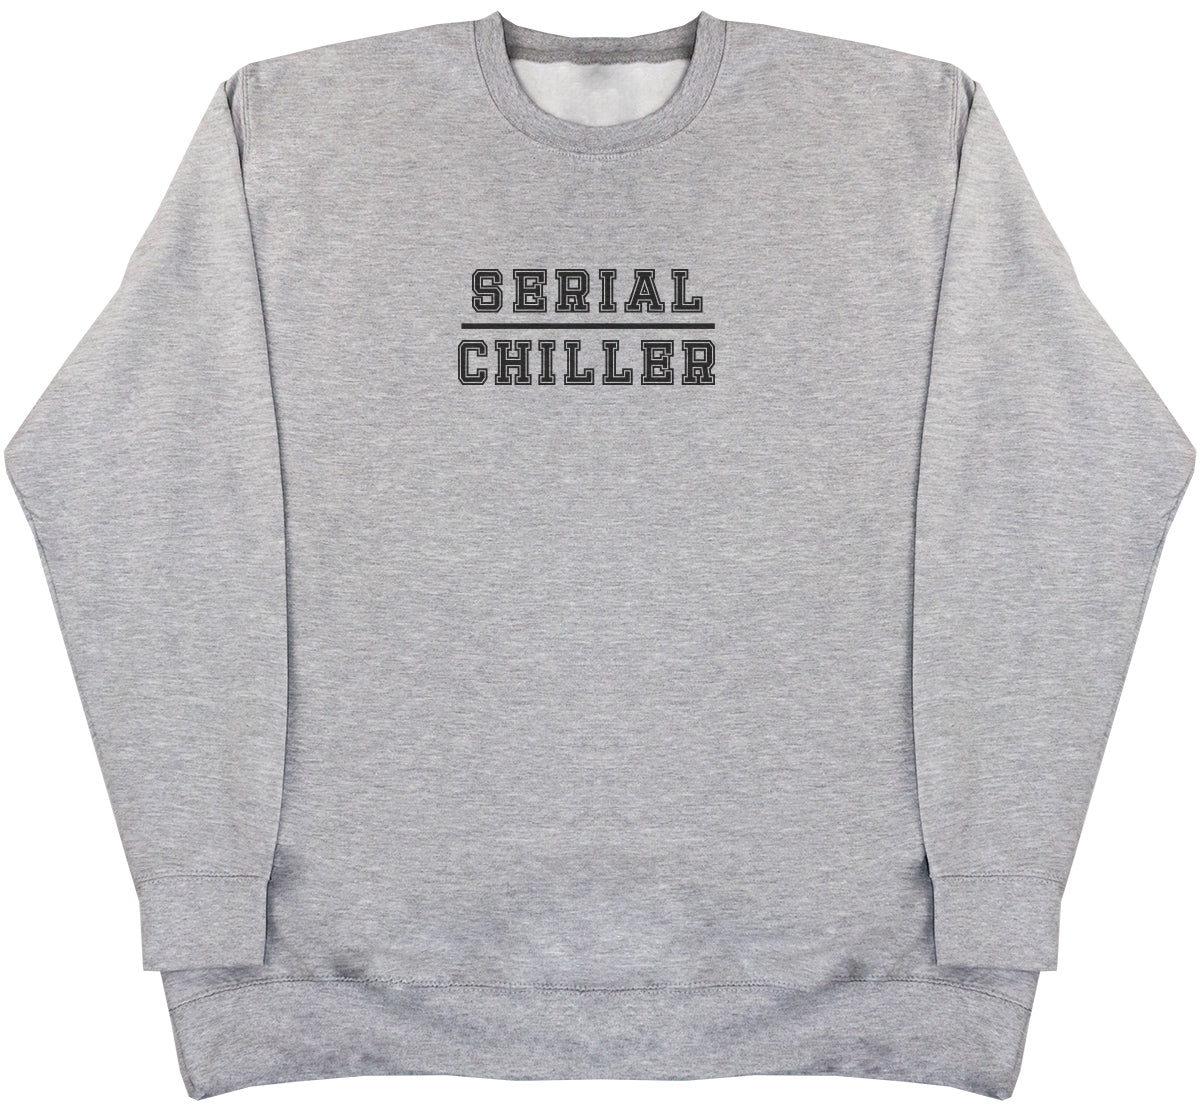 Serial Chiller - Huge Oversized Comfy Original Sweater